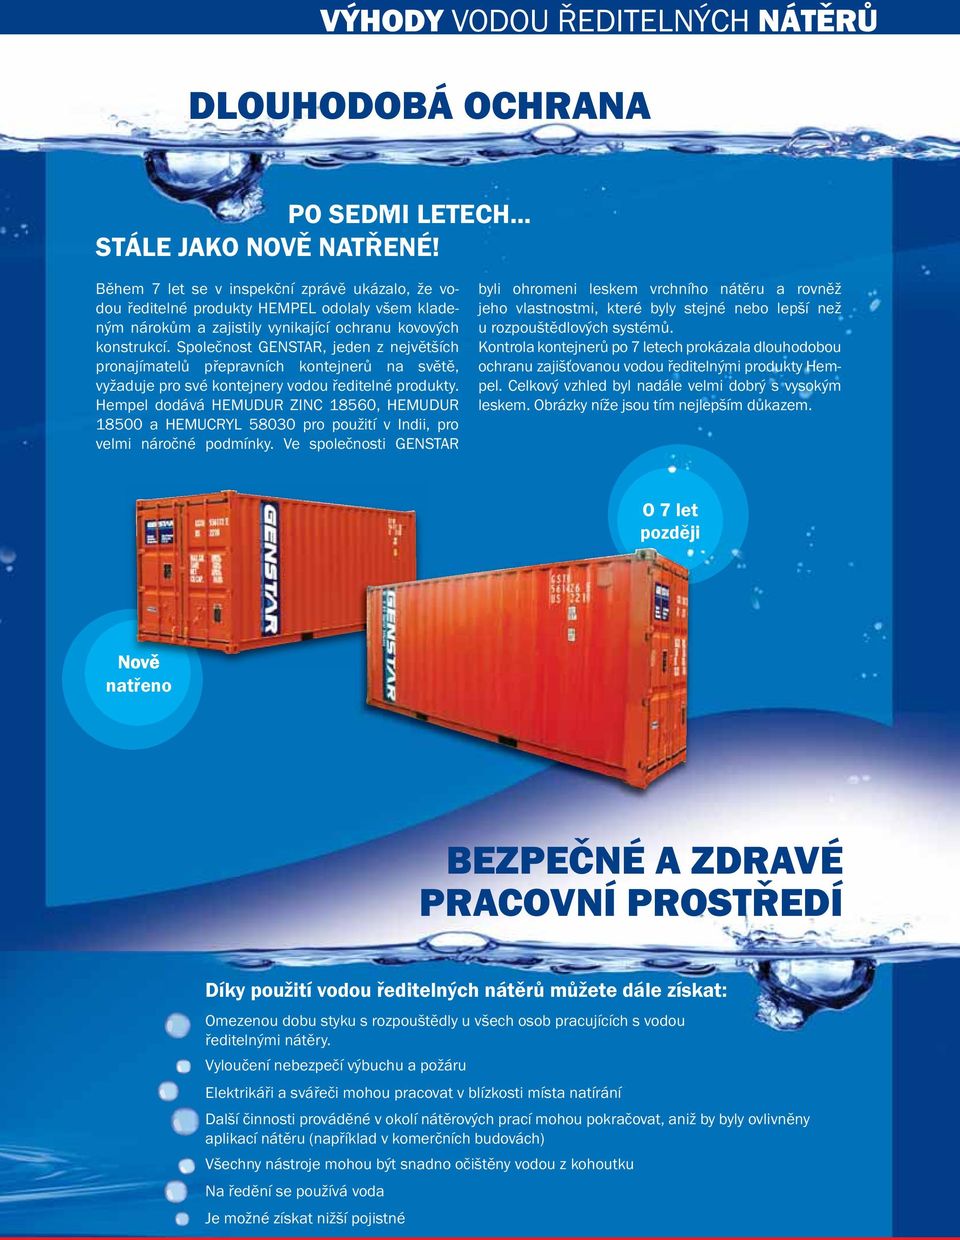 Společnost GENSTAR, jeden z největších pronajímatelů přepravních kontejnerů na světě, vyžaduje pro své kontejnery vodou ředitelné produkty.